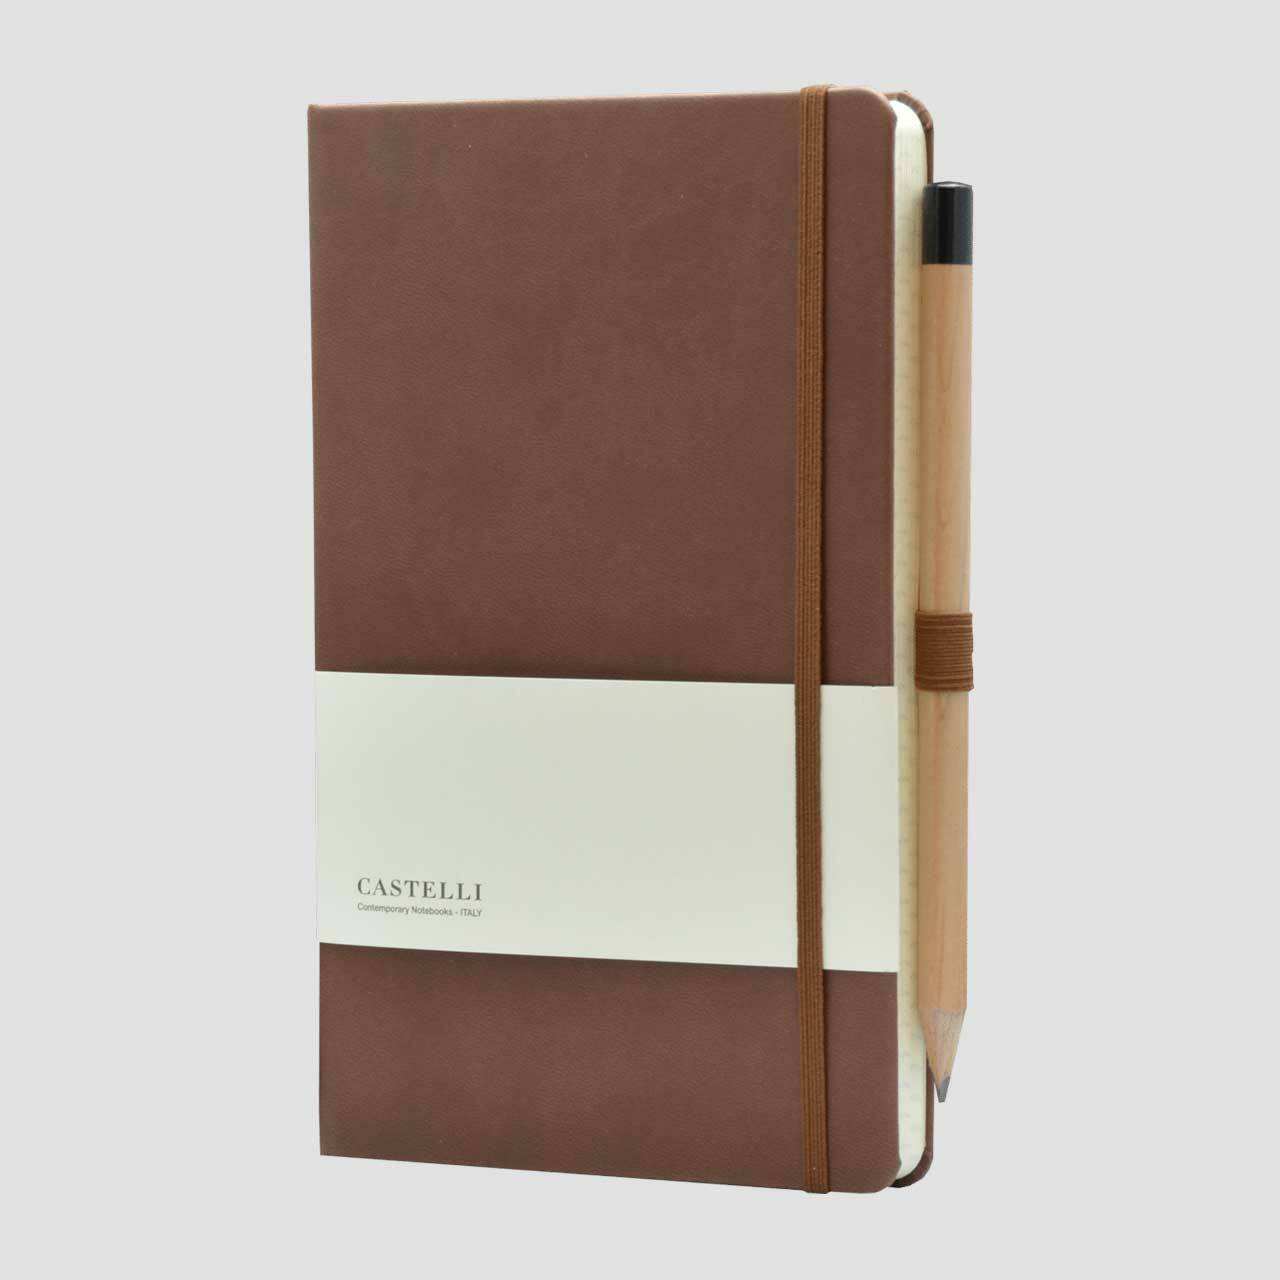 Castelli notitieboek soft touch met banderol en potlood met houder, bruin